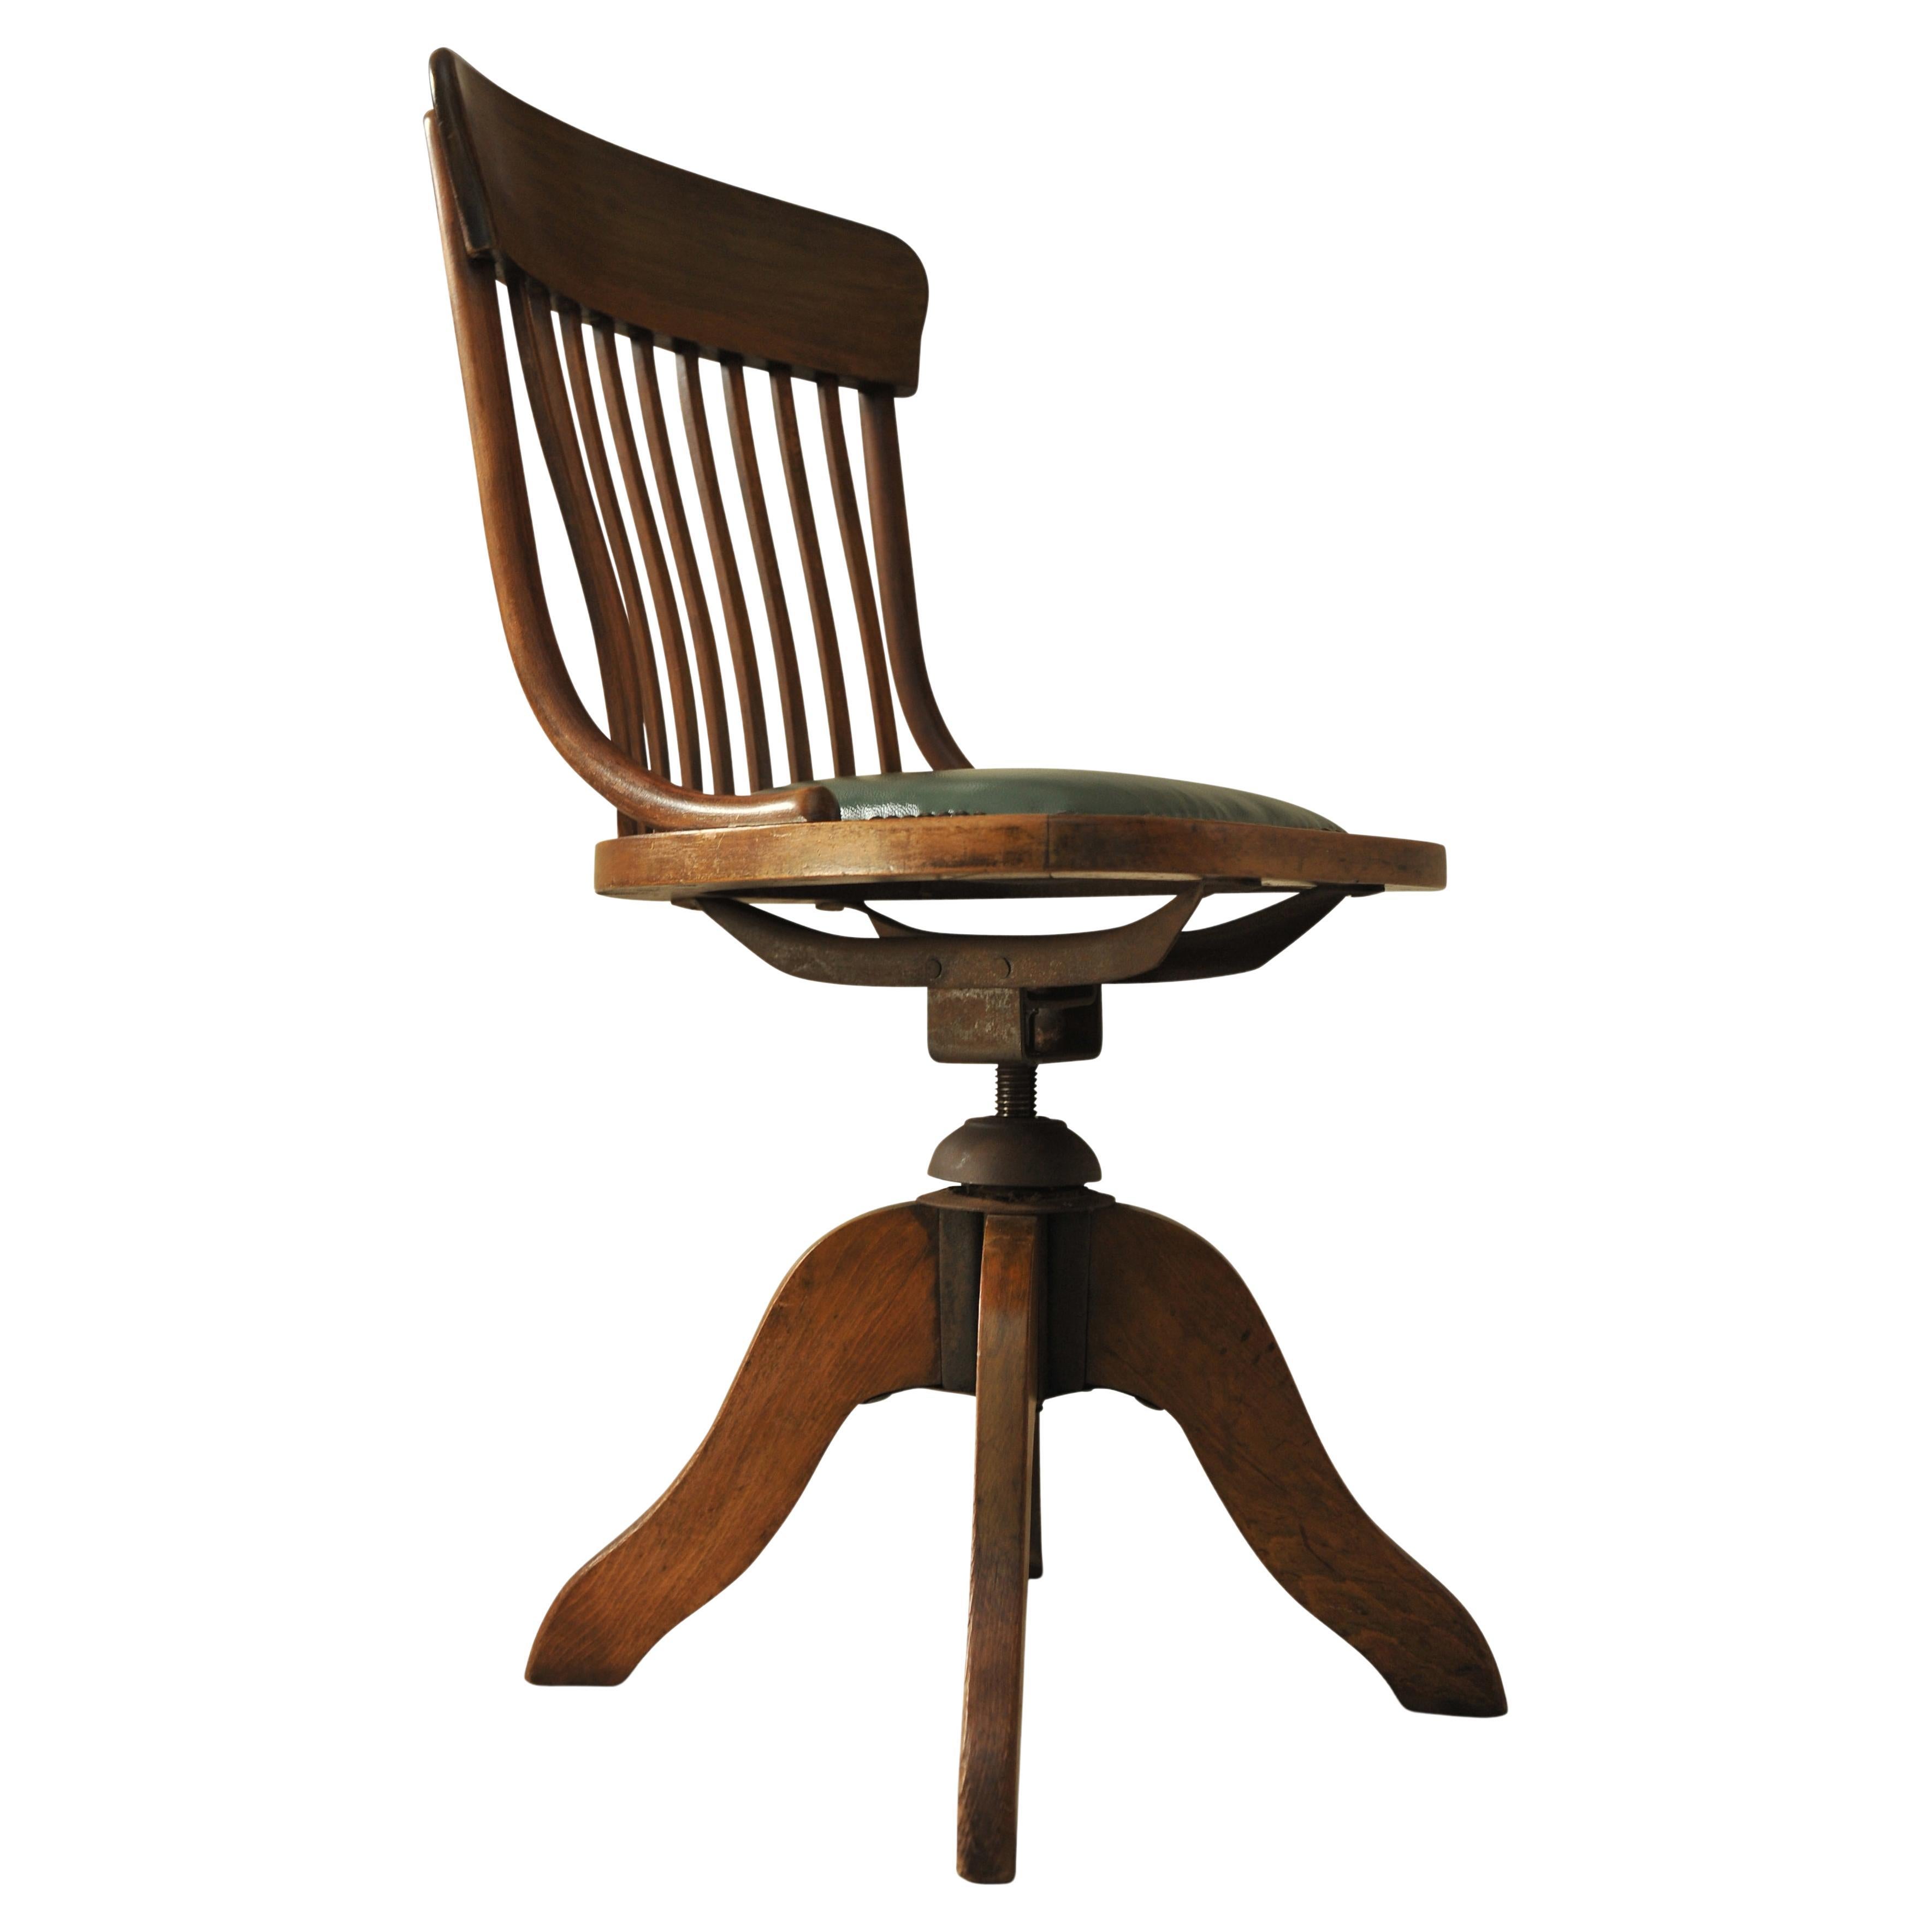 Chaise de bureau tournante victorienne en cuir vert antique poli avec clous 

Le siège a été récemment retapissé dans un cuir vert pâle. 
Les chaises sont très bien fabriquées et offrent une qualité intemporelle pour les maisons modernes et les